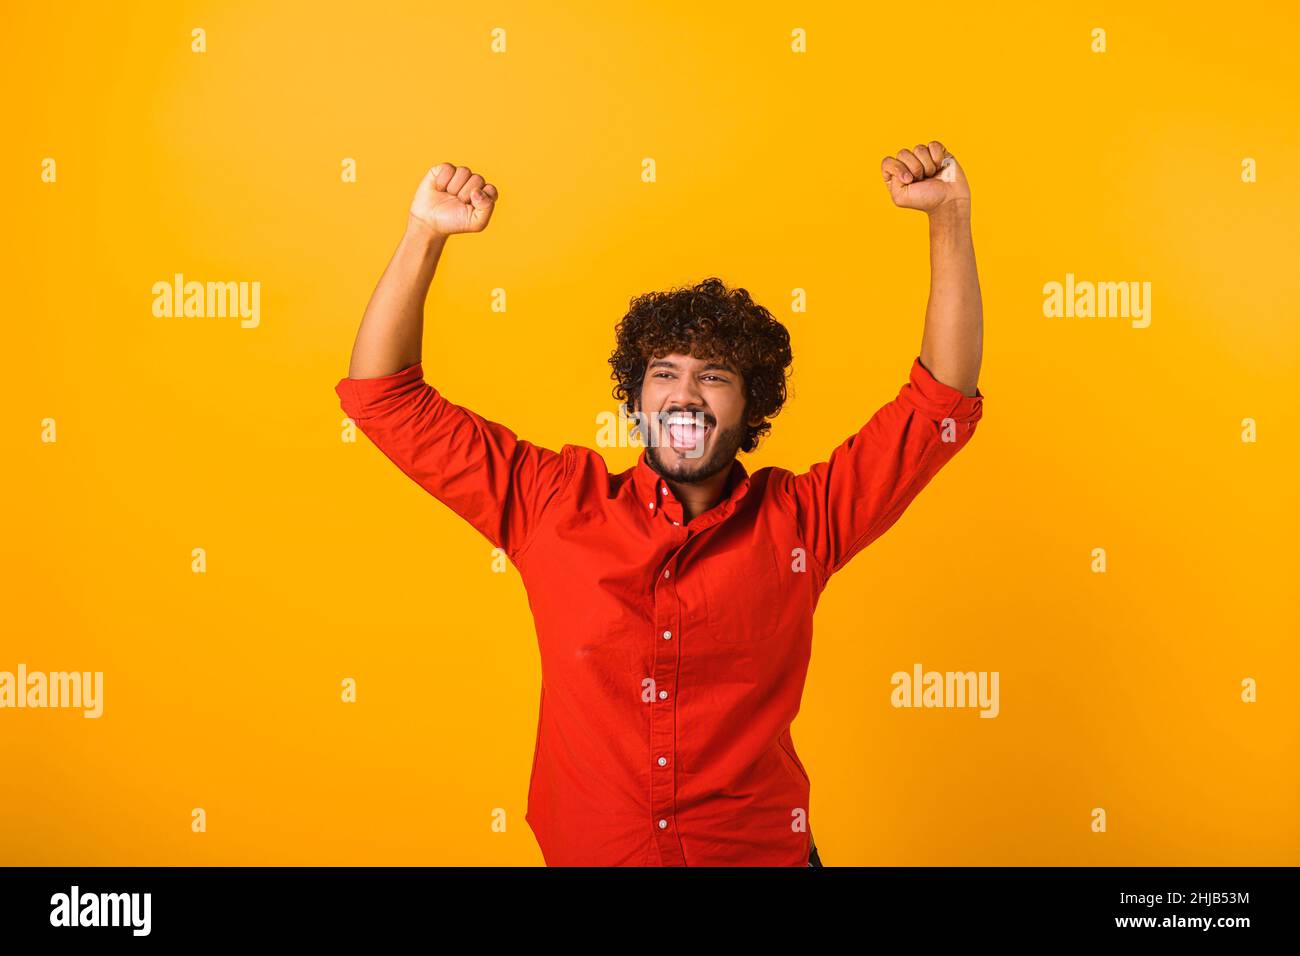 Porträt eines glücklichen schreienden, gut aussehenden bärtigen Mannes, der mit aufgeregtem Gesicht steht und sich über seinen Sieg freut. Innenaufnahme des Studios isoliert auf orangefarbenem Hintergrund Stockfoto